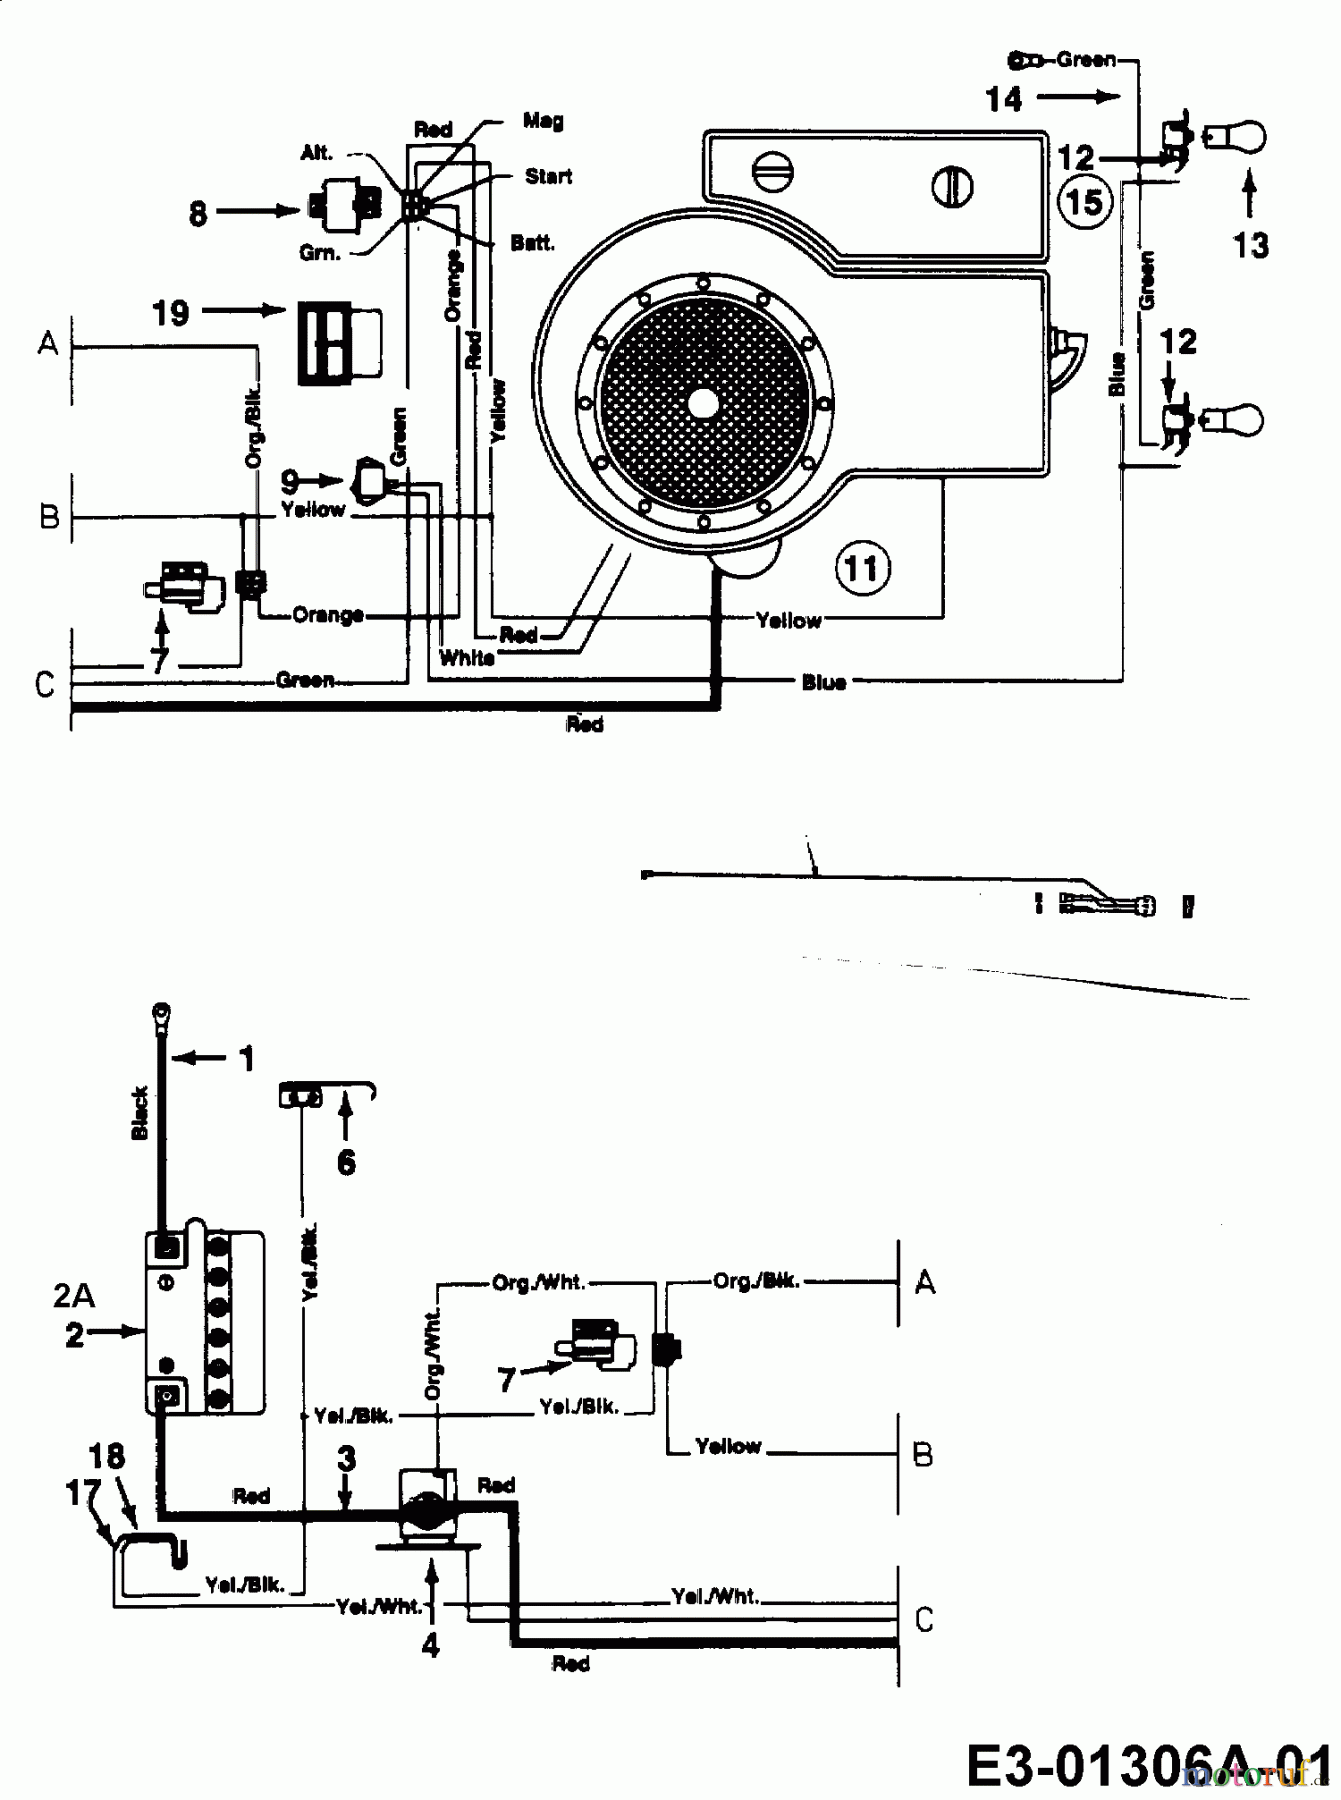  Gutbrod Tracteurs de pelouse Sprint 1400 13A145GC604  (1998) Plan électrique cylindre simple